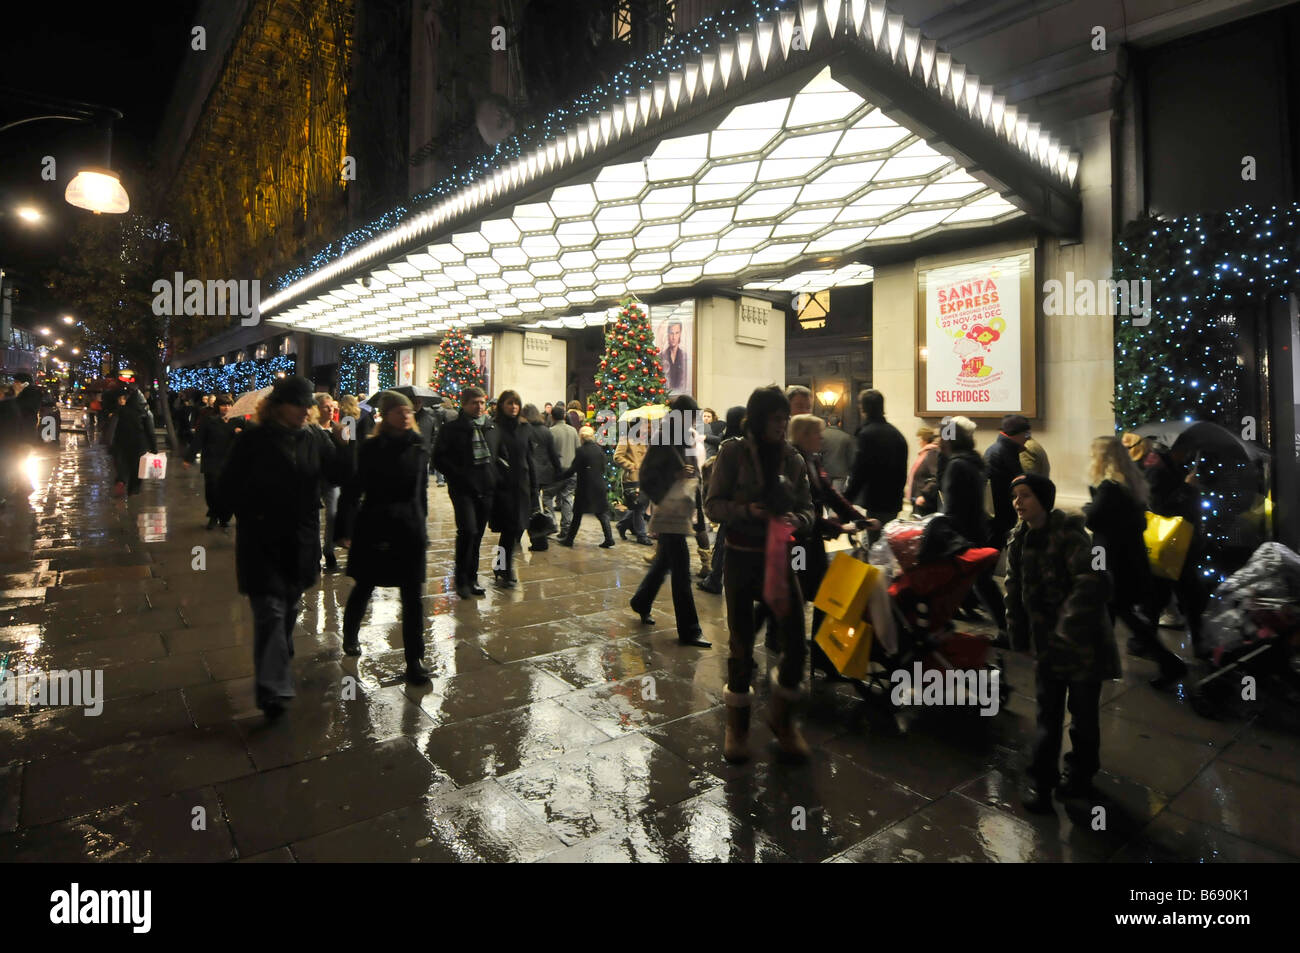 Nacht Blick geschäftigen Oxford Street Shopper & Touristen Silhouette & Weihnachten Einkaufen im Regen außerhalb Selfridges Kaufhaus Eingang London UK Stockfoto